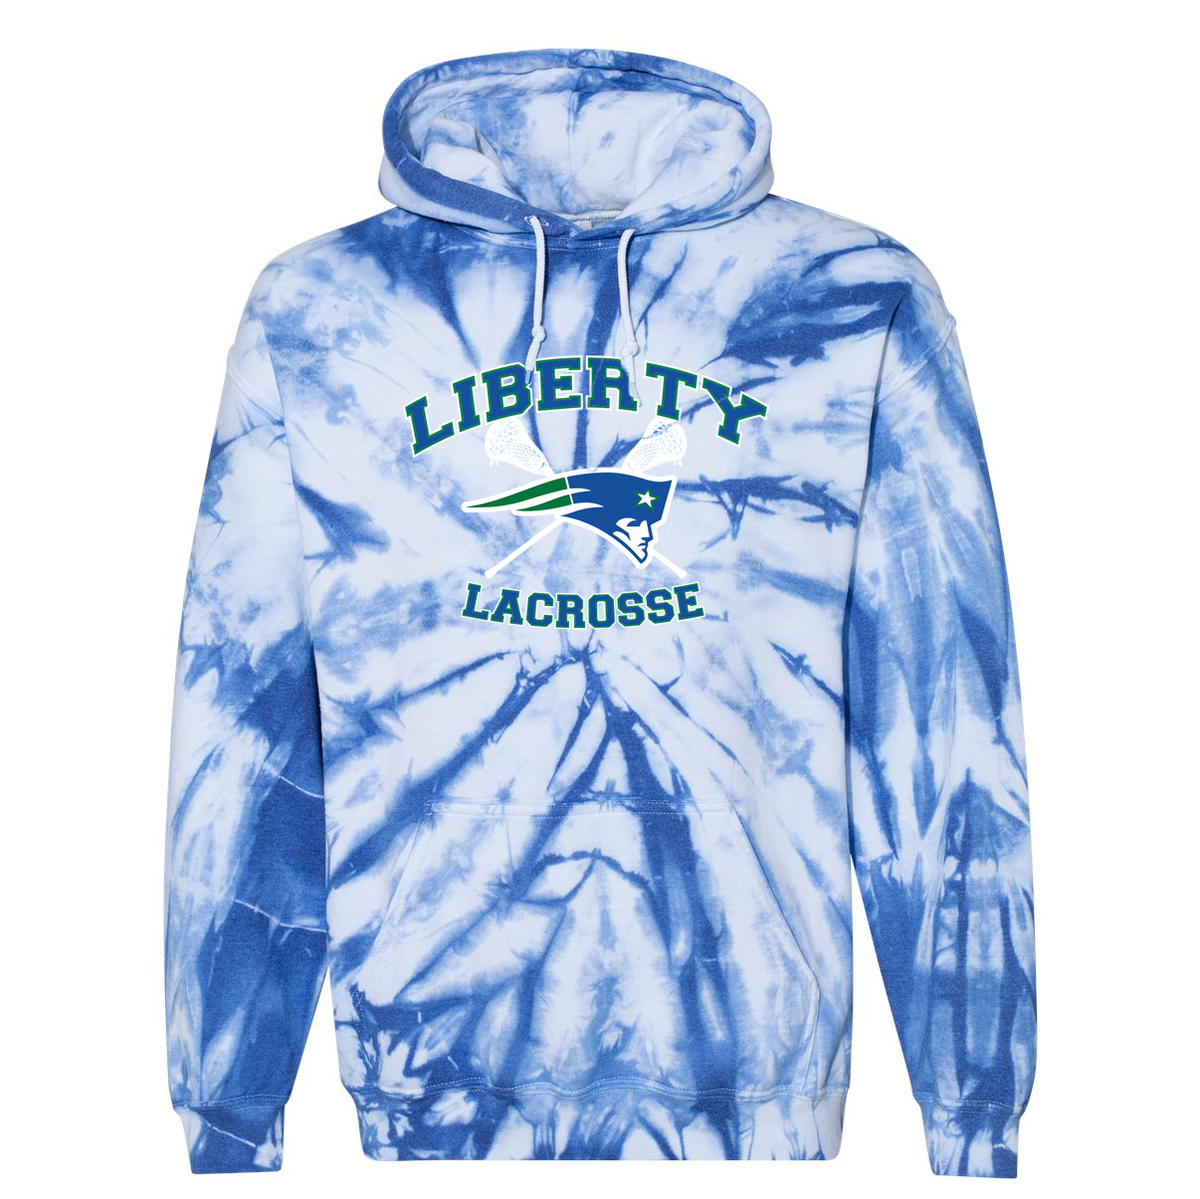 Liberty Lacrosse Blended Hooded Tie-Dyed Sweatshirt